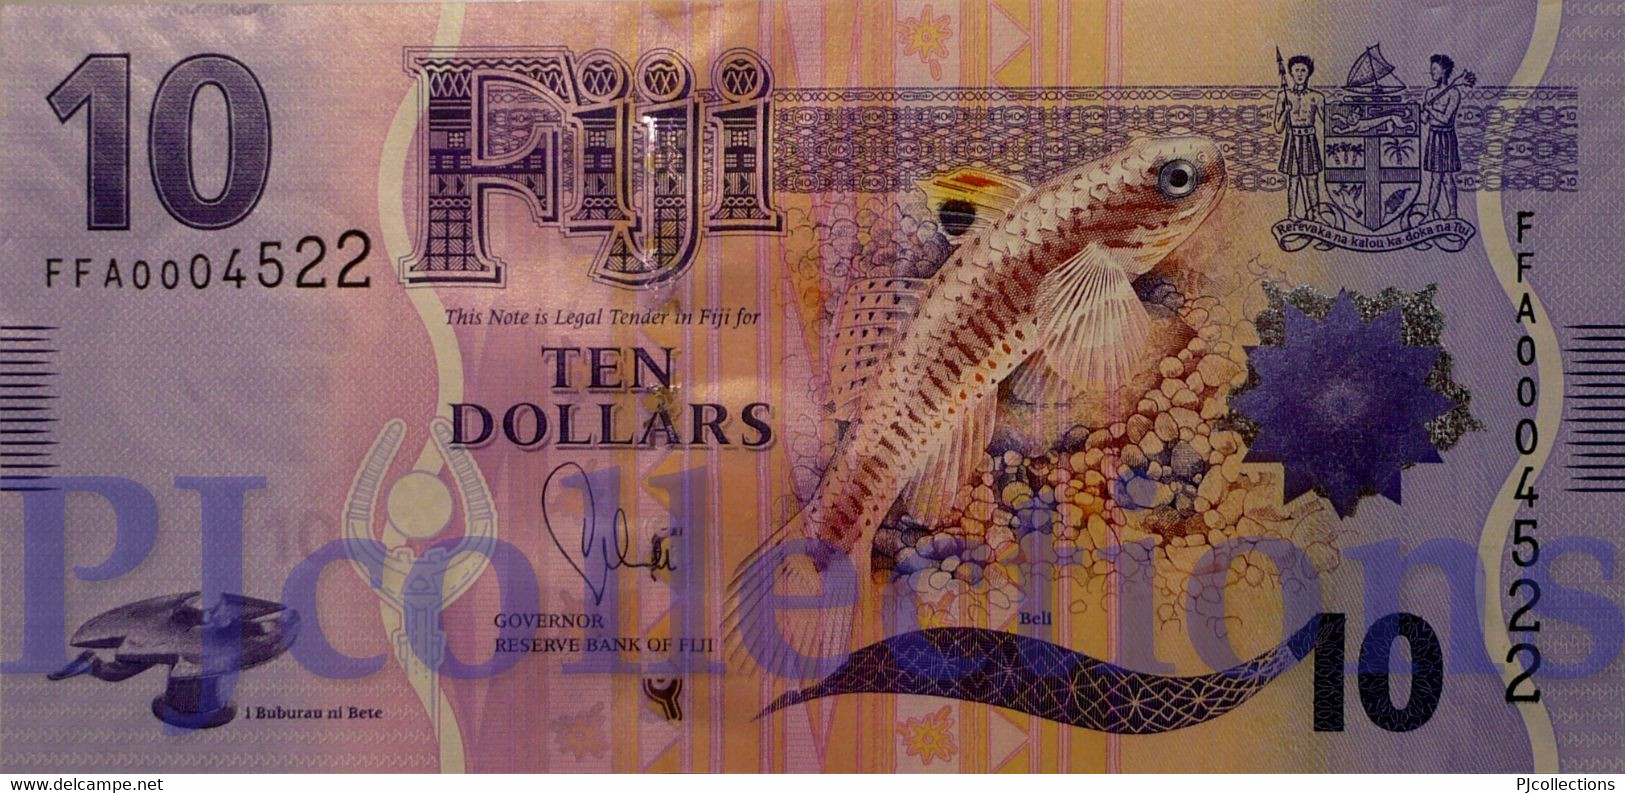 FIJI 10 DOLLARS 2013 PICK 116a UNC PREFIX "FFA" LOW SERIAL NUMBER - Fiji